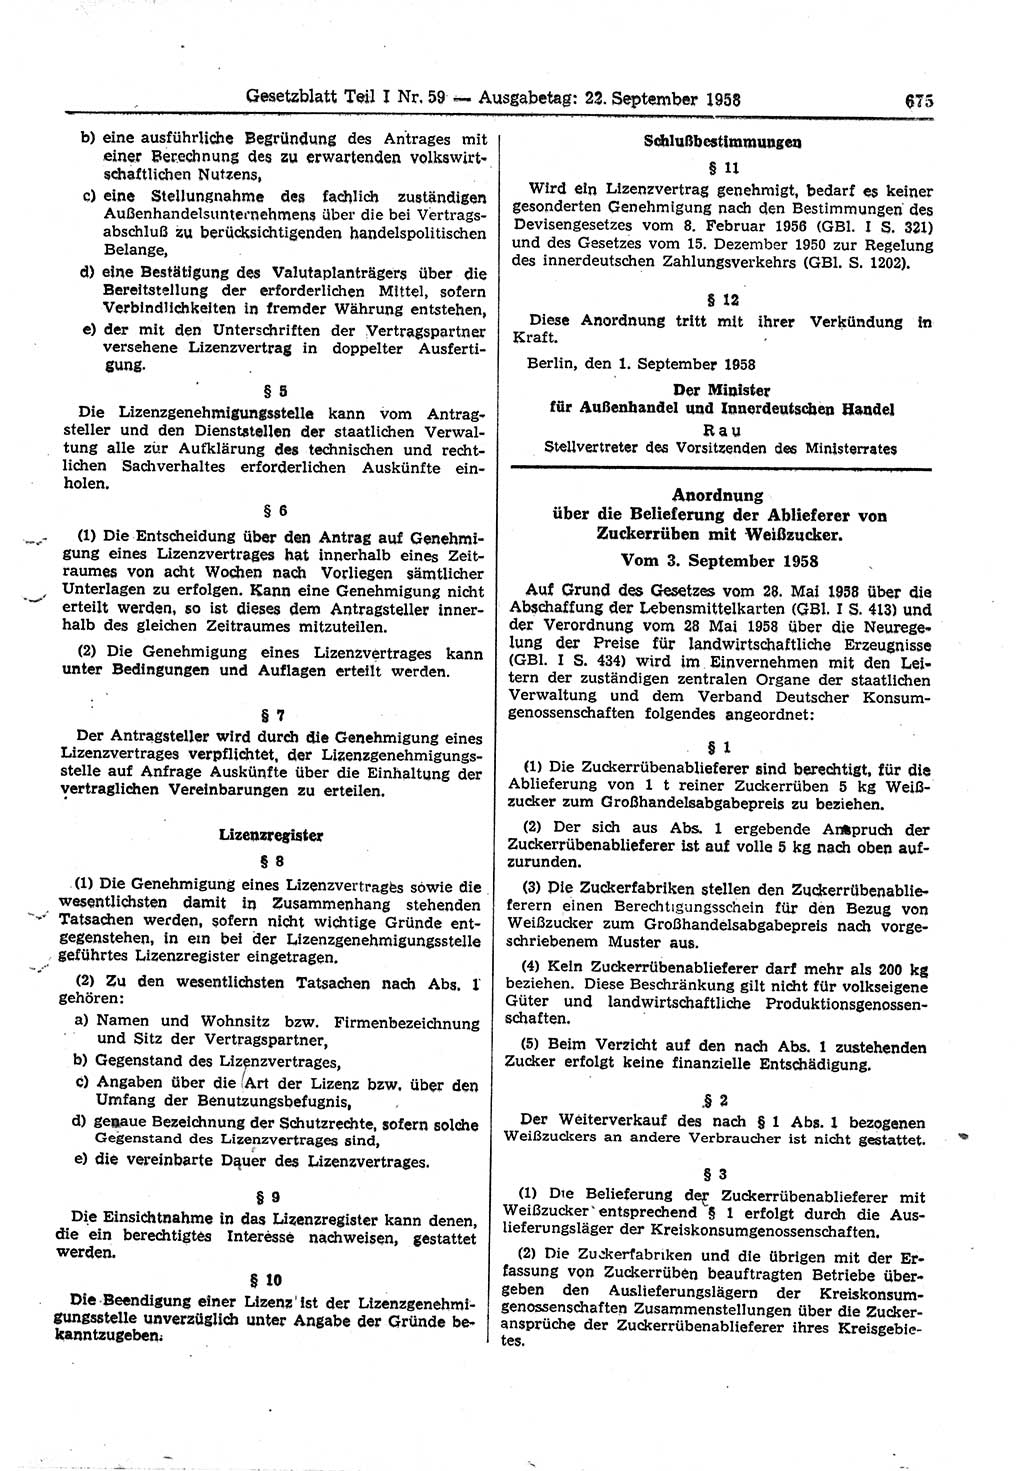 Gesetzblatt (GBl.) der Deutschen Demokratischen Republik (DDR) Teil Ⅰ 1958, Seite 675 (GBl. DDR Ⅰ 1958, S. 675)